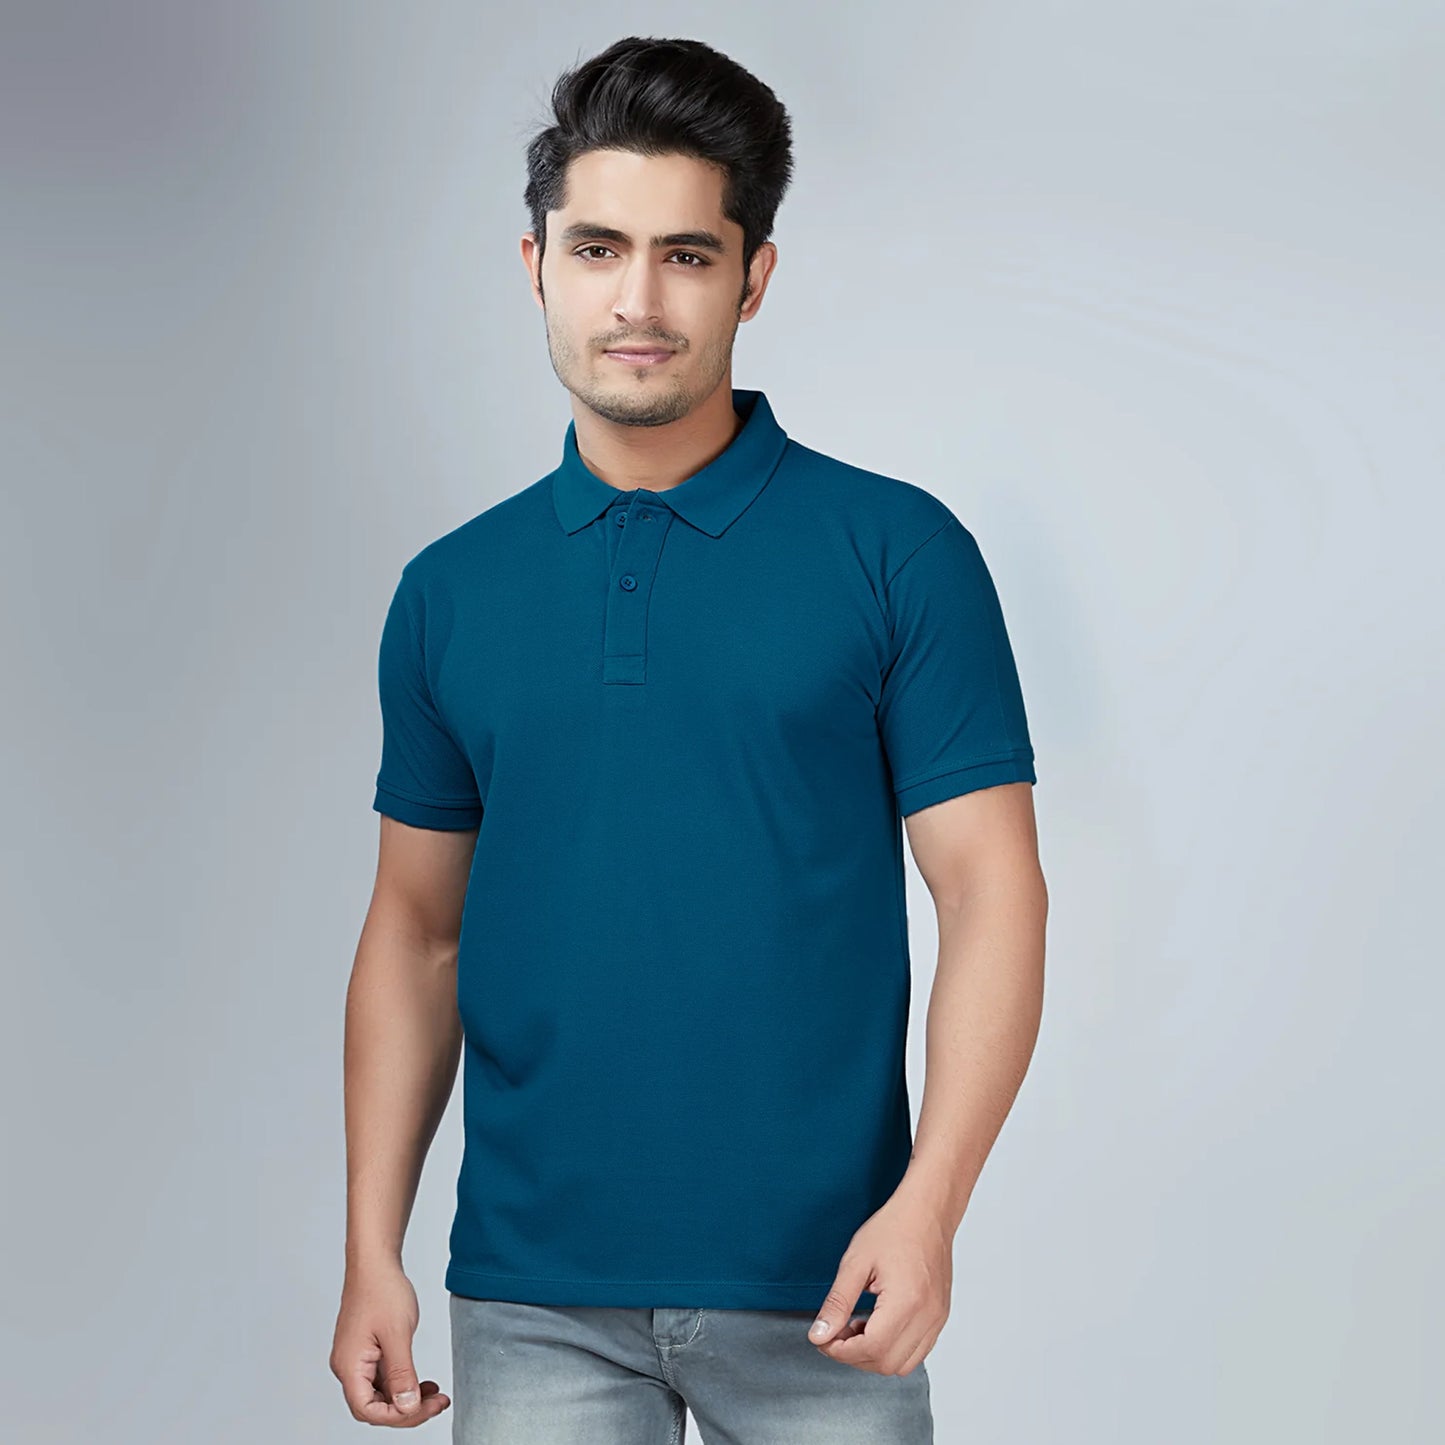 Men's Petroleum Blue Polo T-Shirt